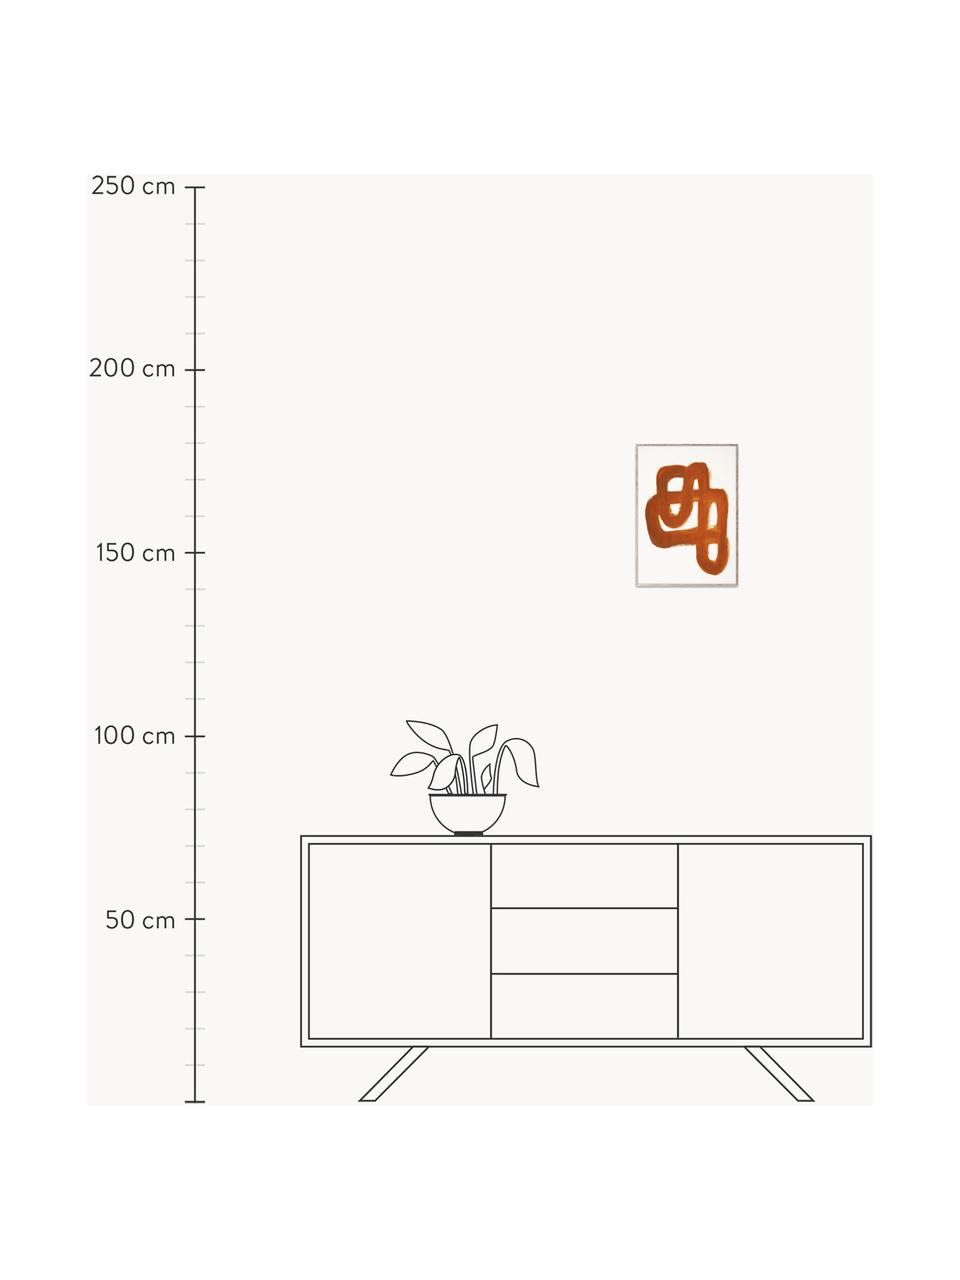 Plakát Orange Brush, 230 g matný zušlechtěný papír, digitální tisk s 12 barvami.

Tento produkt je vyroben z udržitelných zdrojů dřeva s certifikací FSC®., Terakotová, bílá, Š 30 cm, V 40 cm